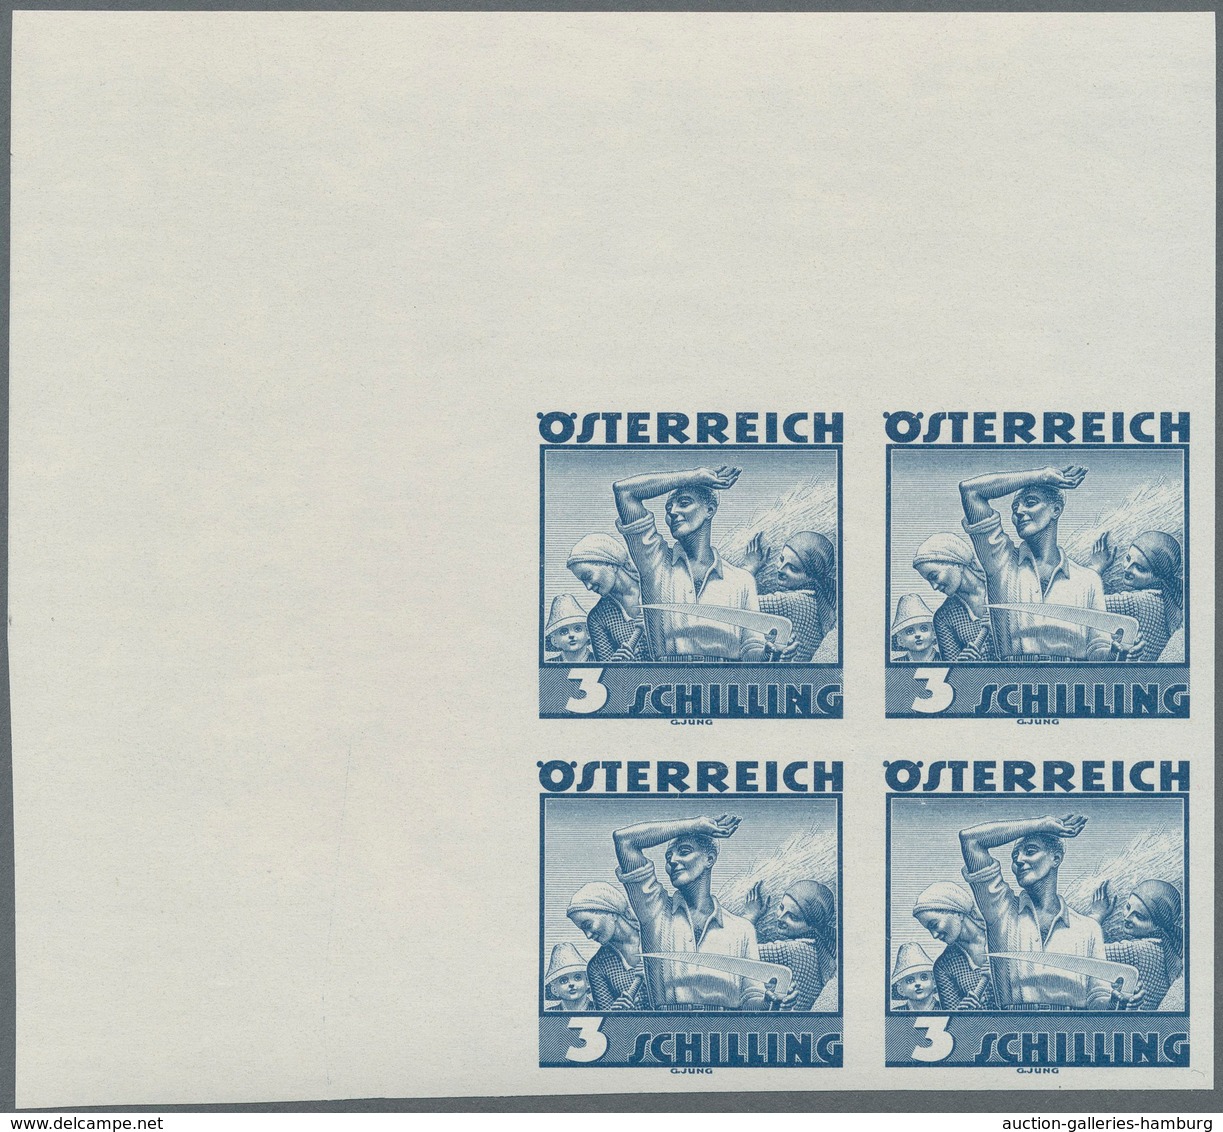 Österreich: 1934, Freimarken "Trachten", 3 Sch. "Ländliche Arbeit", Ungezähnter Offsetdruck-Probedru - Ungebraucht